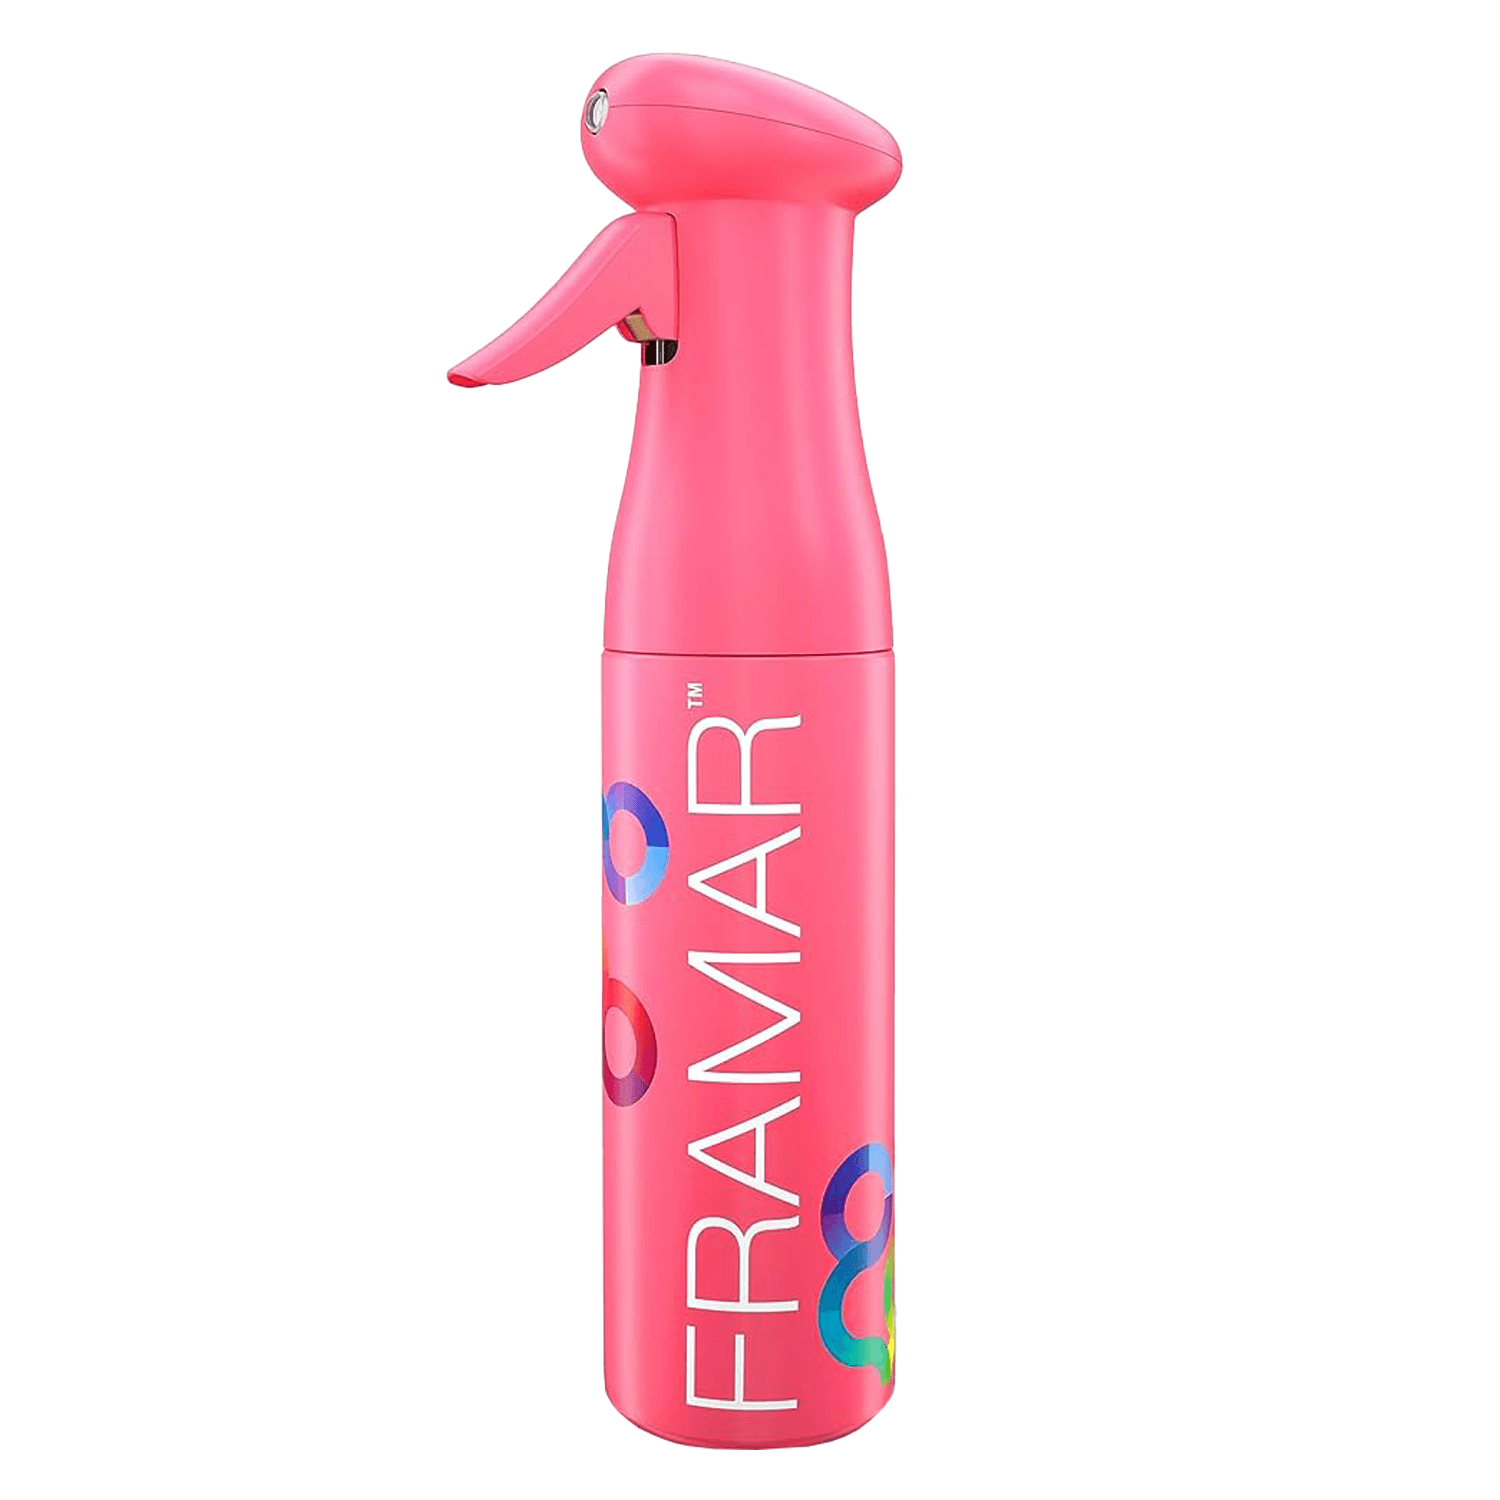 Produktbild von Framar - Myst Assist Spray Bottle Pink